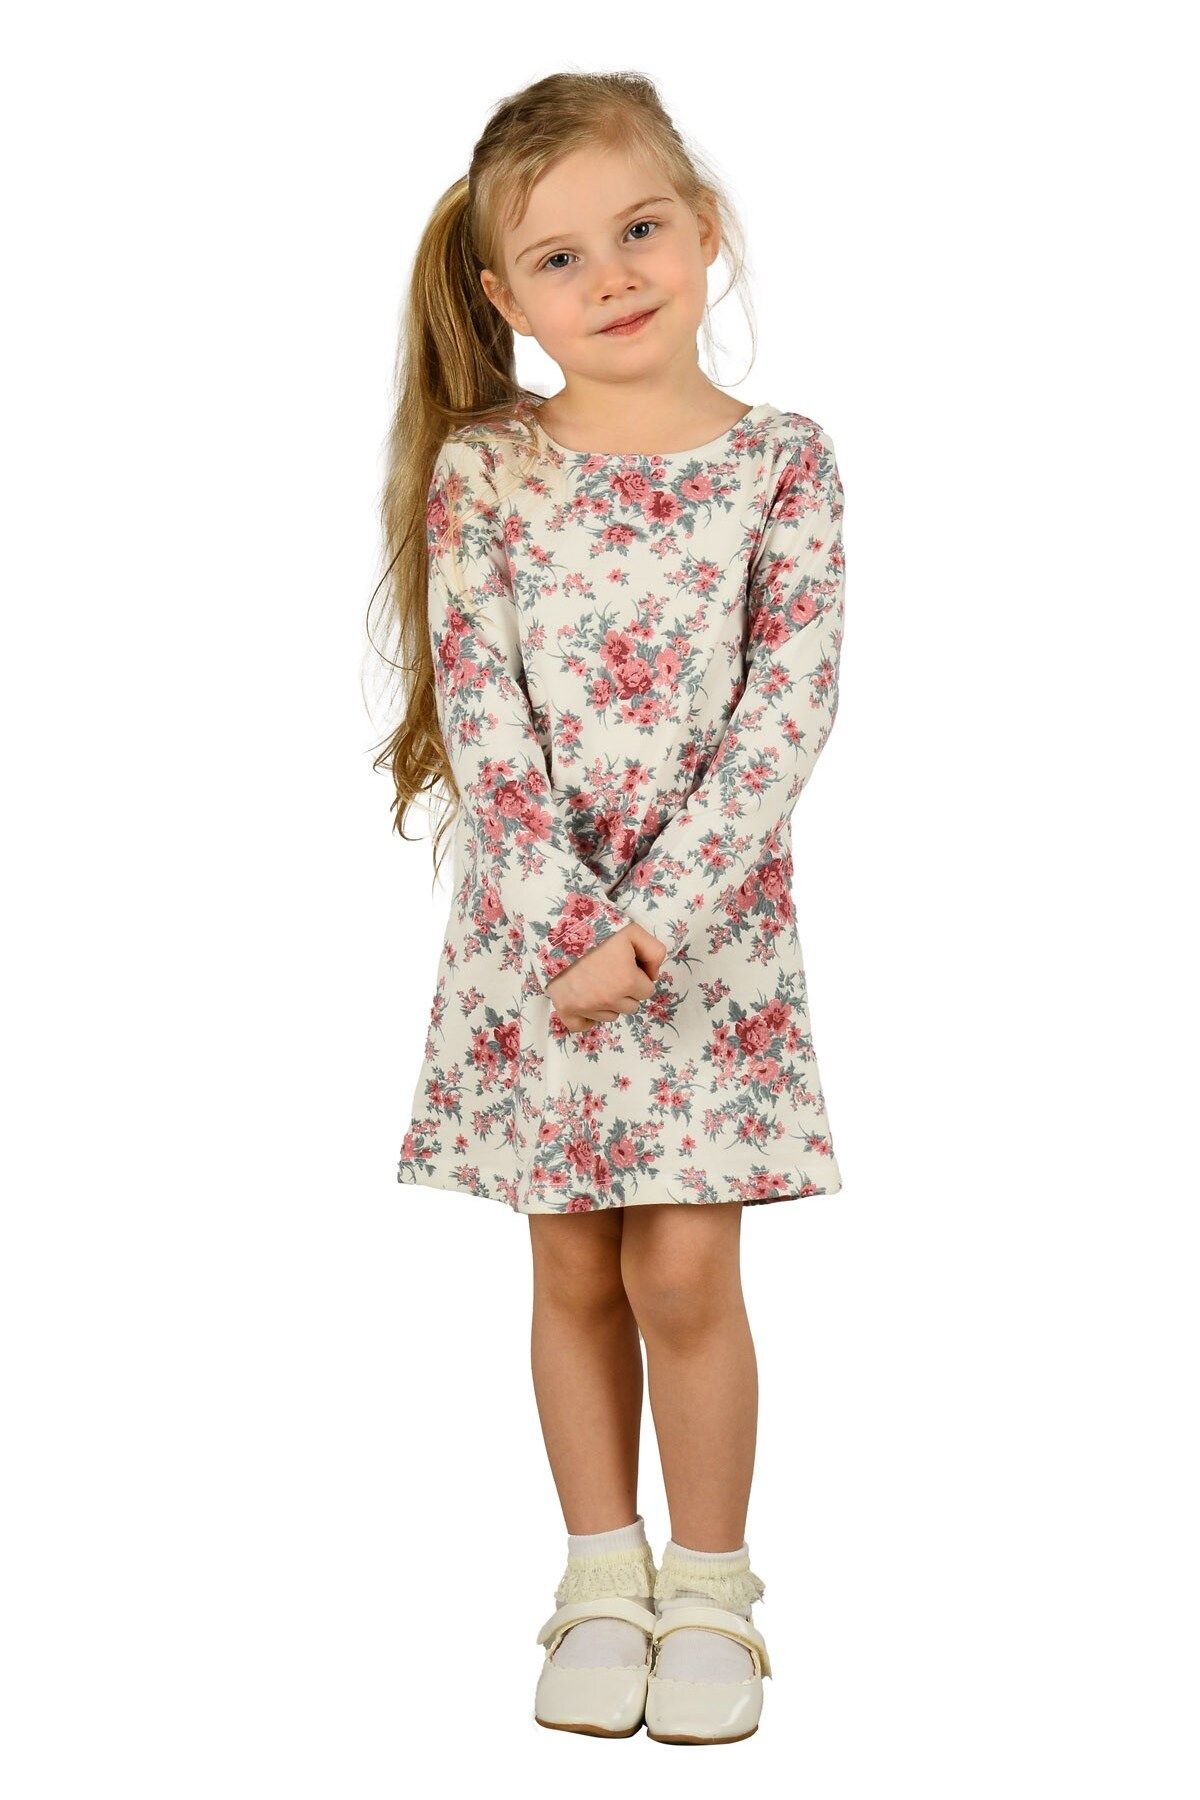 Silversun Hscstore Çiçek Desenli Kız Çocuk Örme Elbise-ek 218698 |hscstore